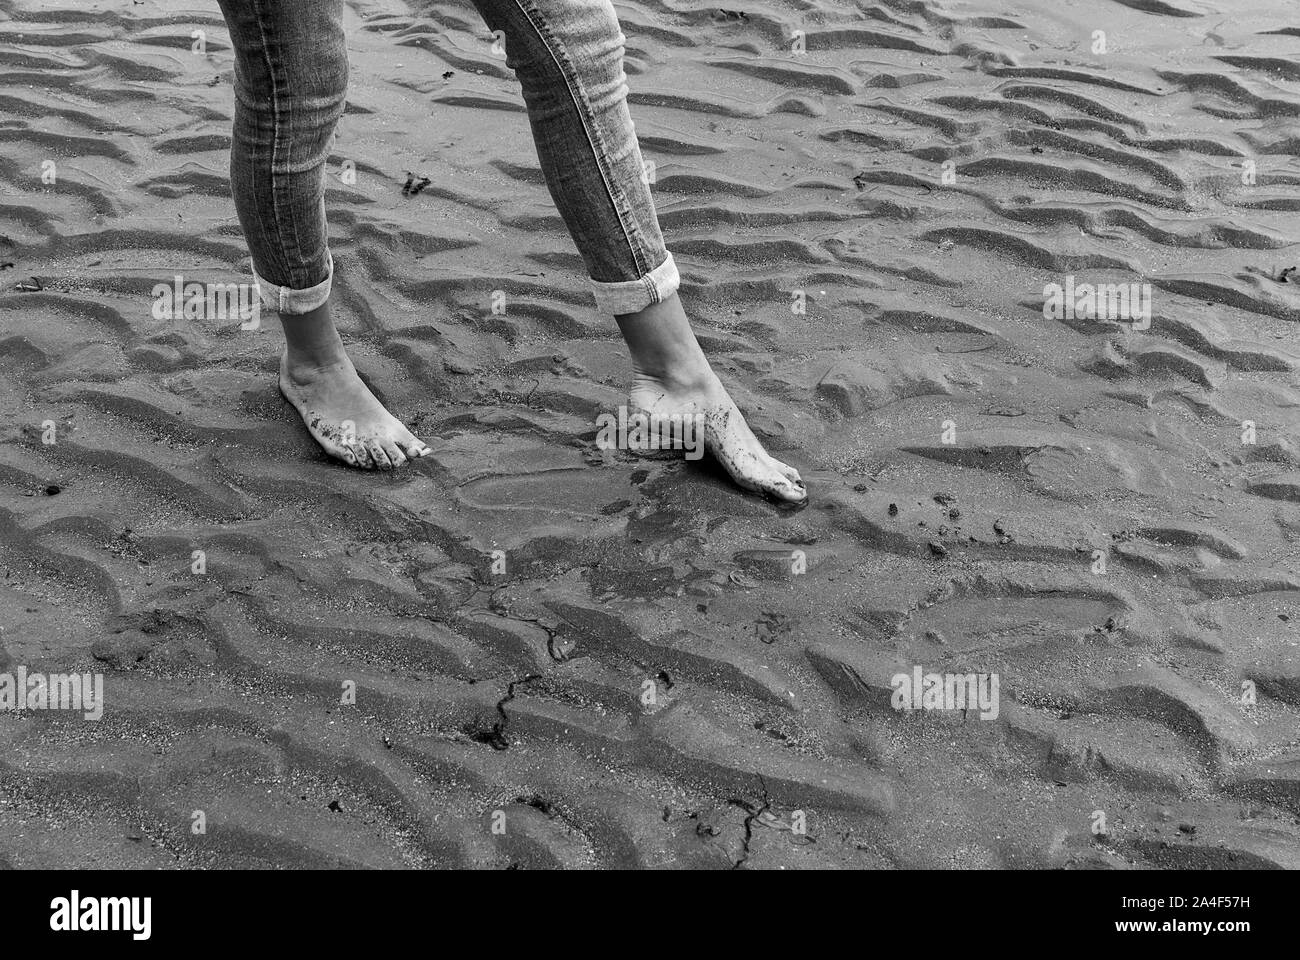 Junge Frau wandern und Spielen auf Sandstrand und hinterlassen Spuren im Strand. Killbrittain, Kilbrittain Strand, Irland. Stockfoto